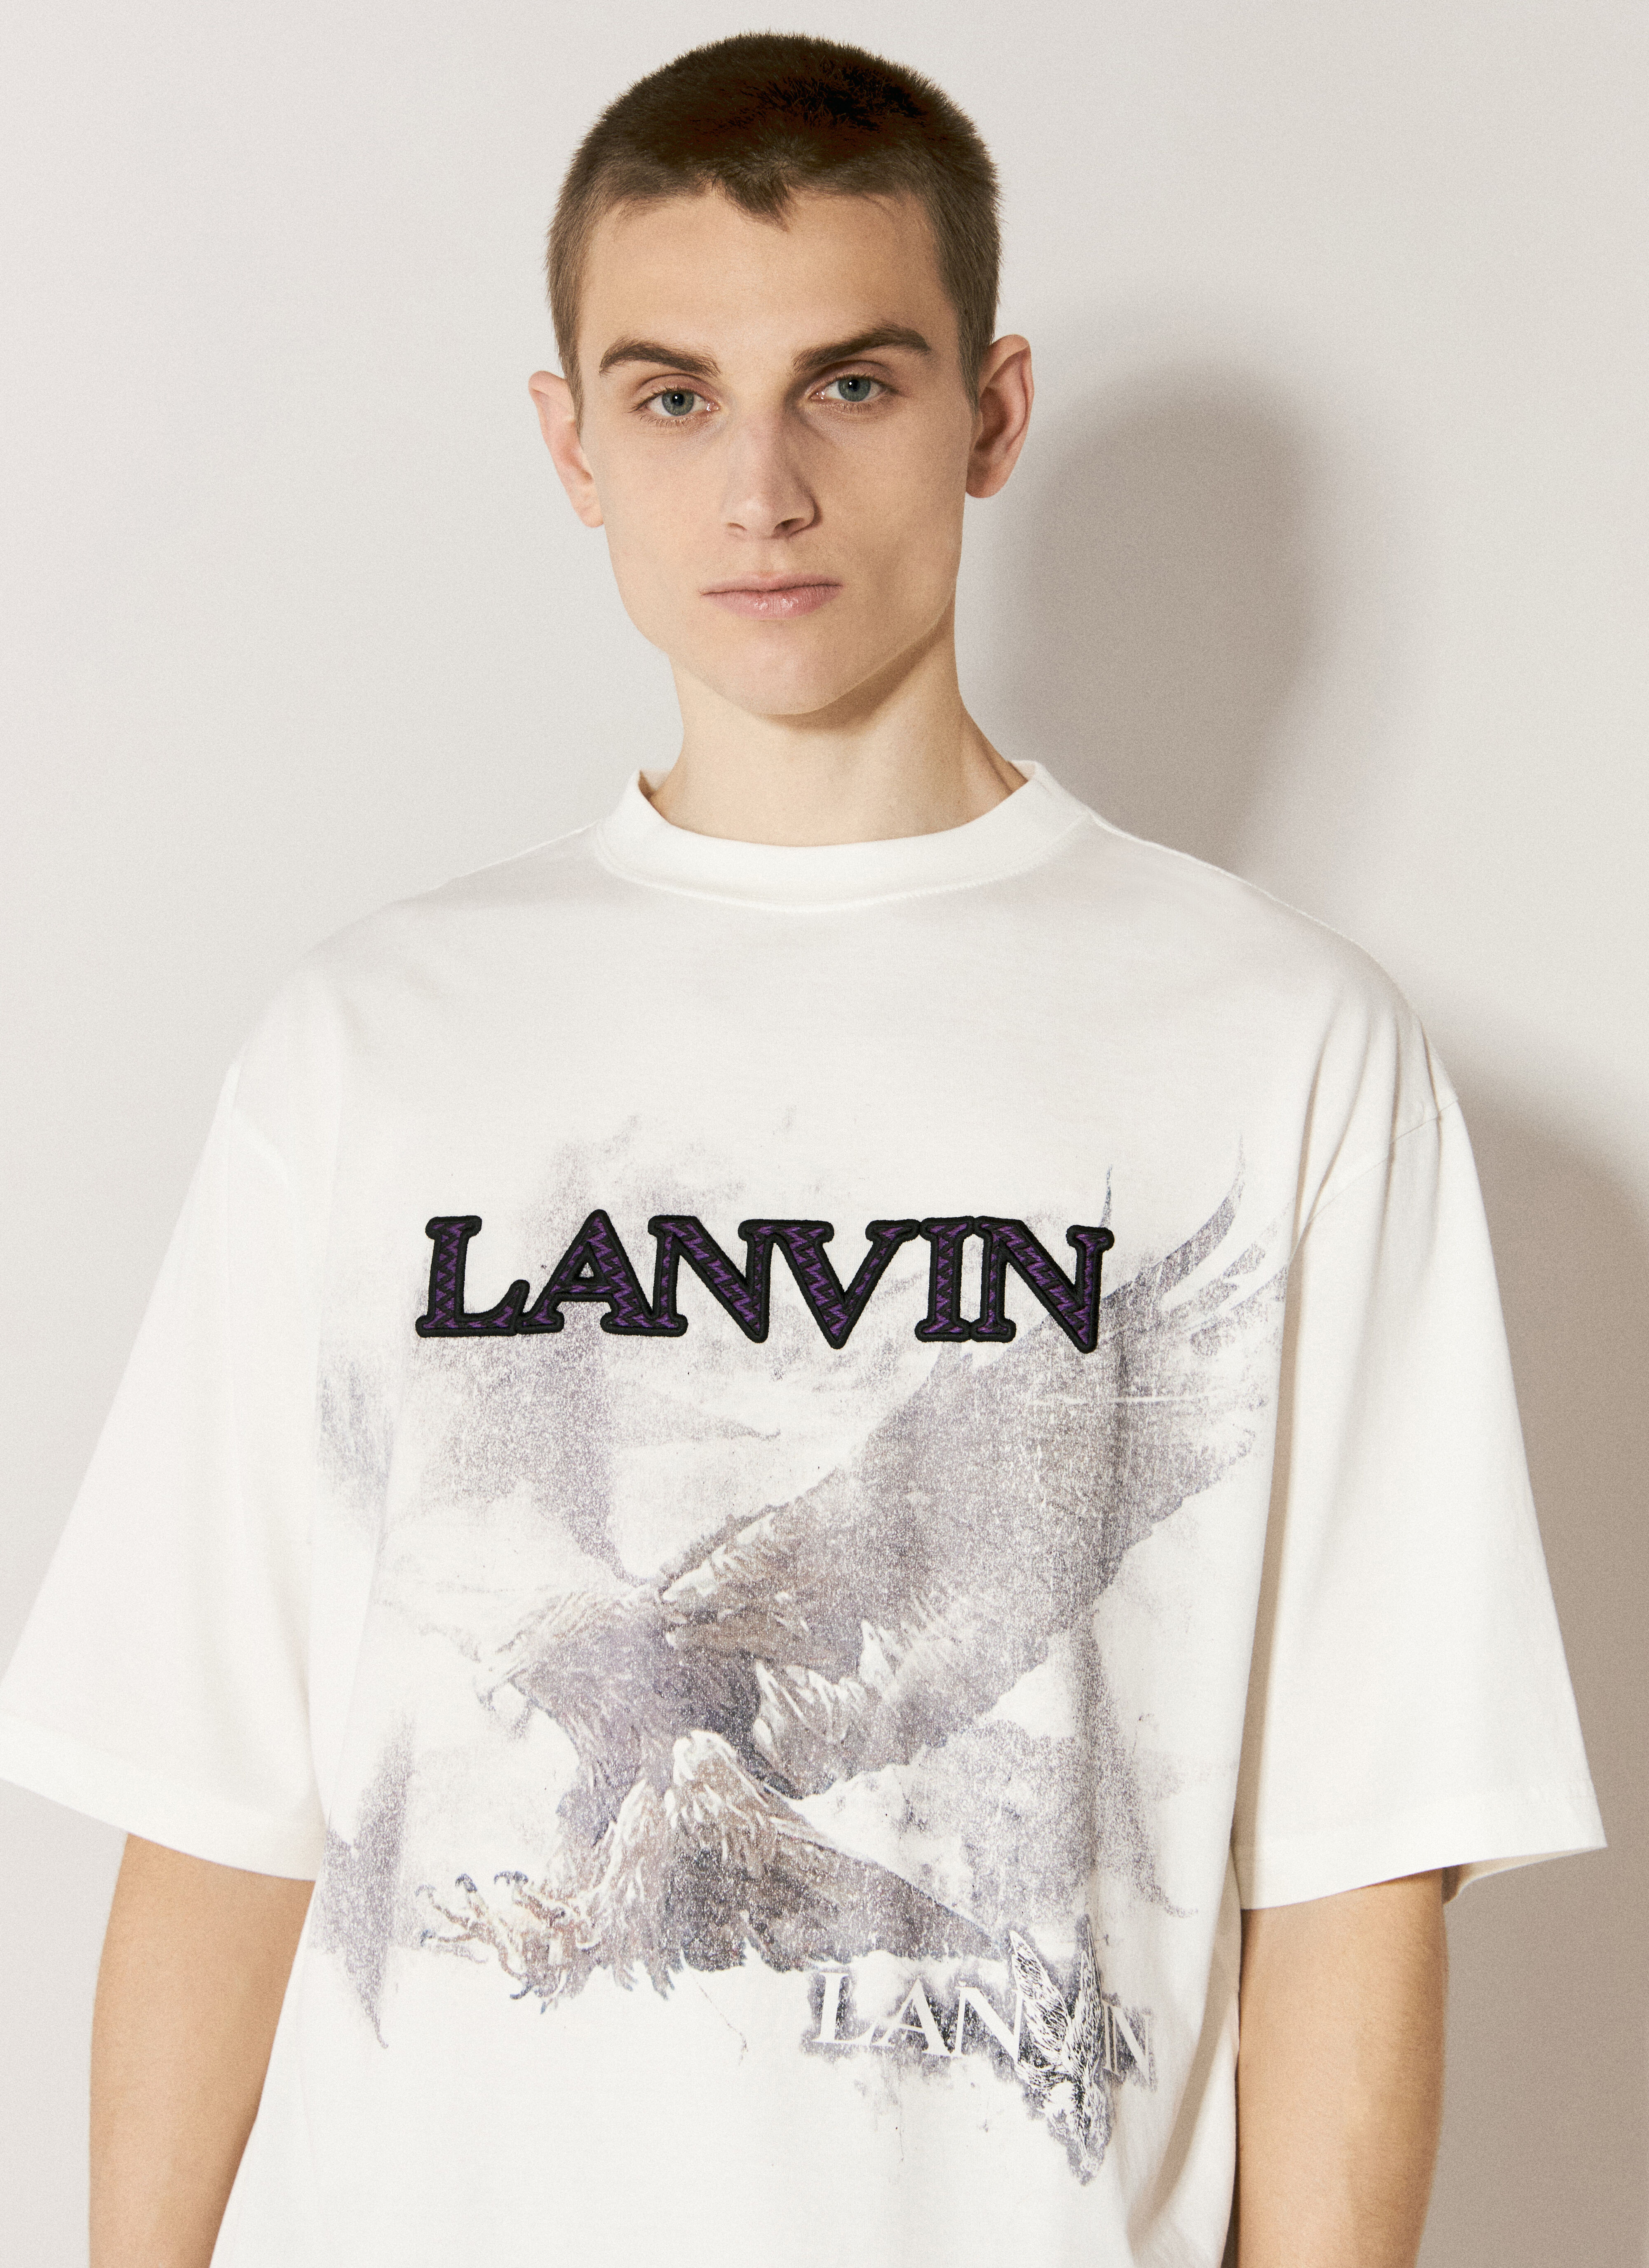 Lanvin 로고 프린트 티셔츠  화이트 lnv0155008